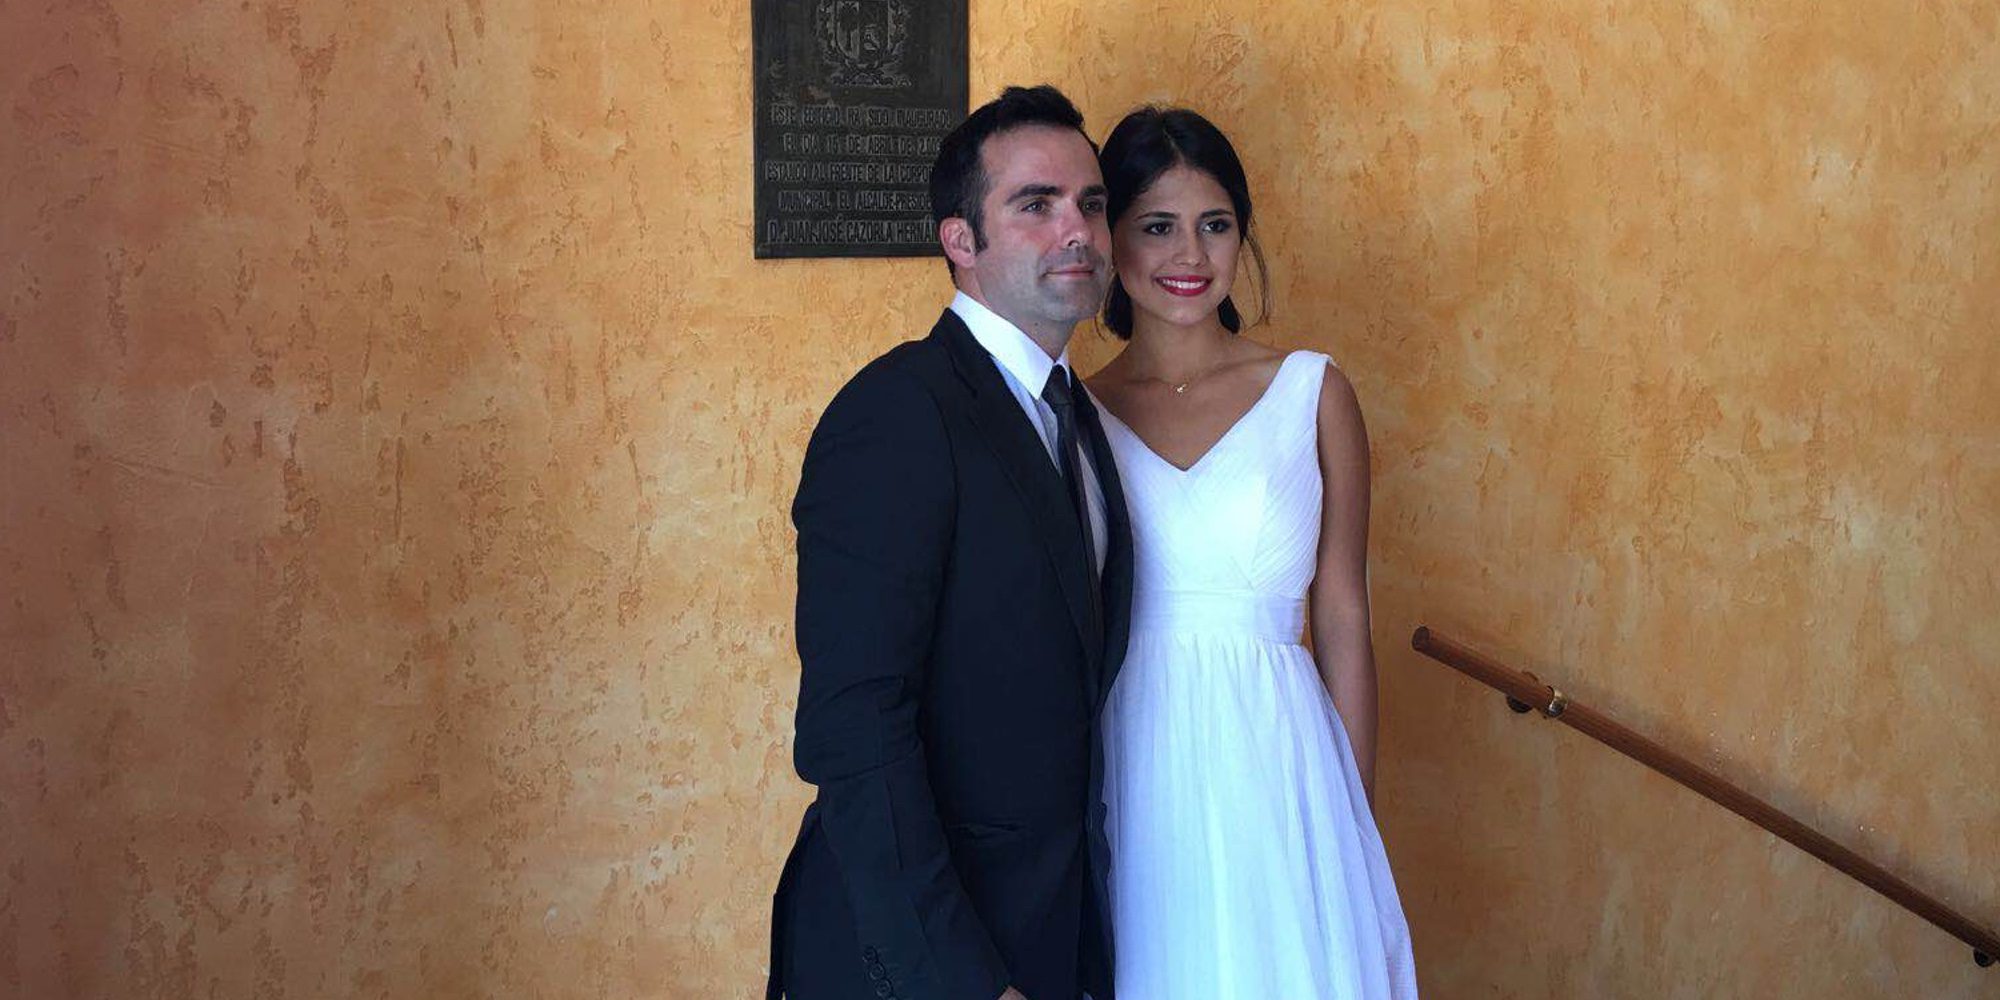 Naím Thomas sobre su boda con Dahianha Mendoza: "Estoy convencido de haber tomado la decisión correcta"